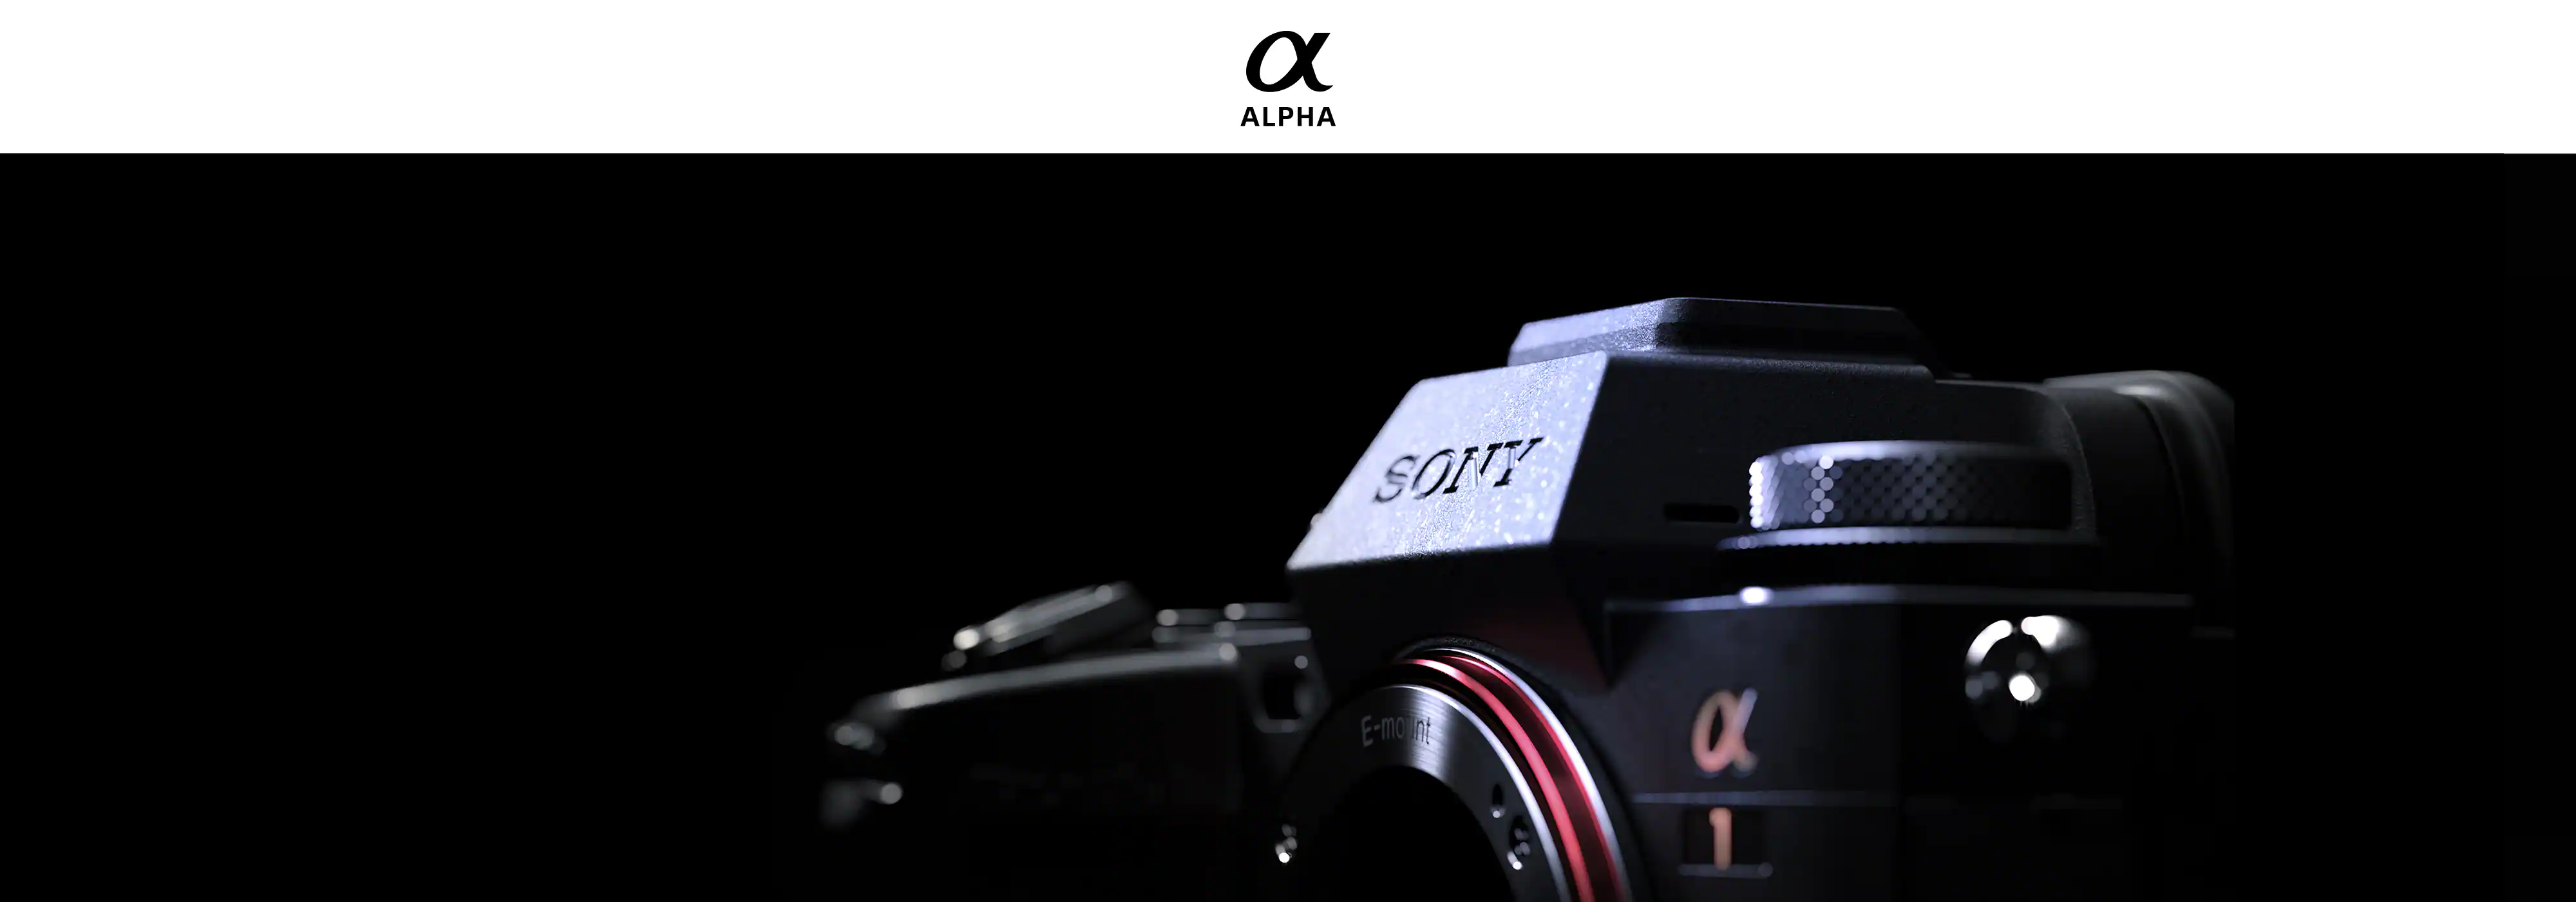 دوربین سونی مدل آلفا 1